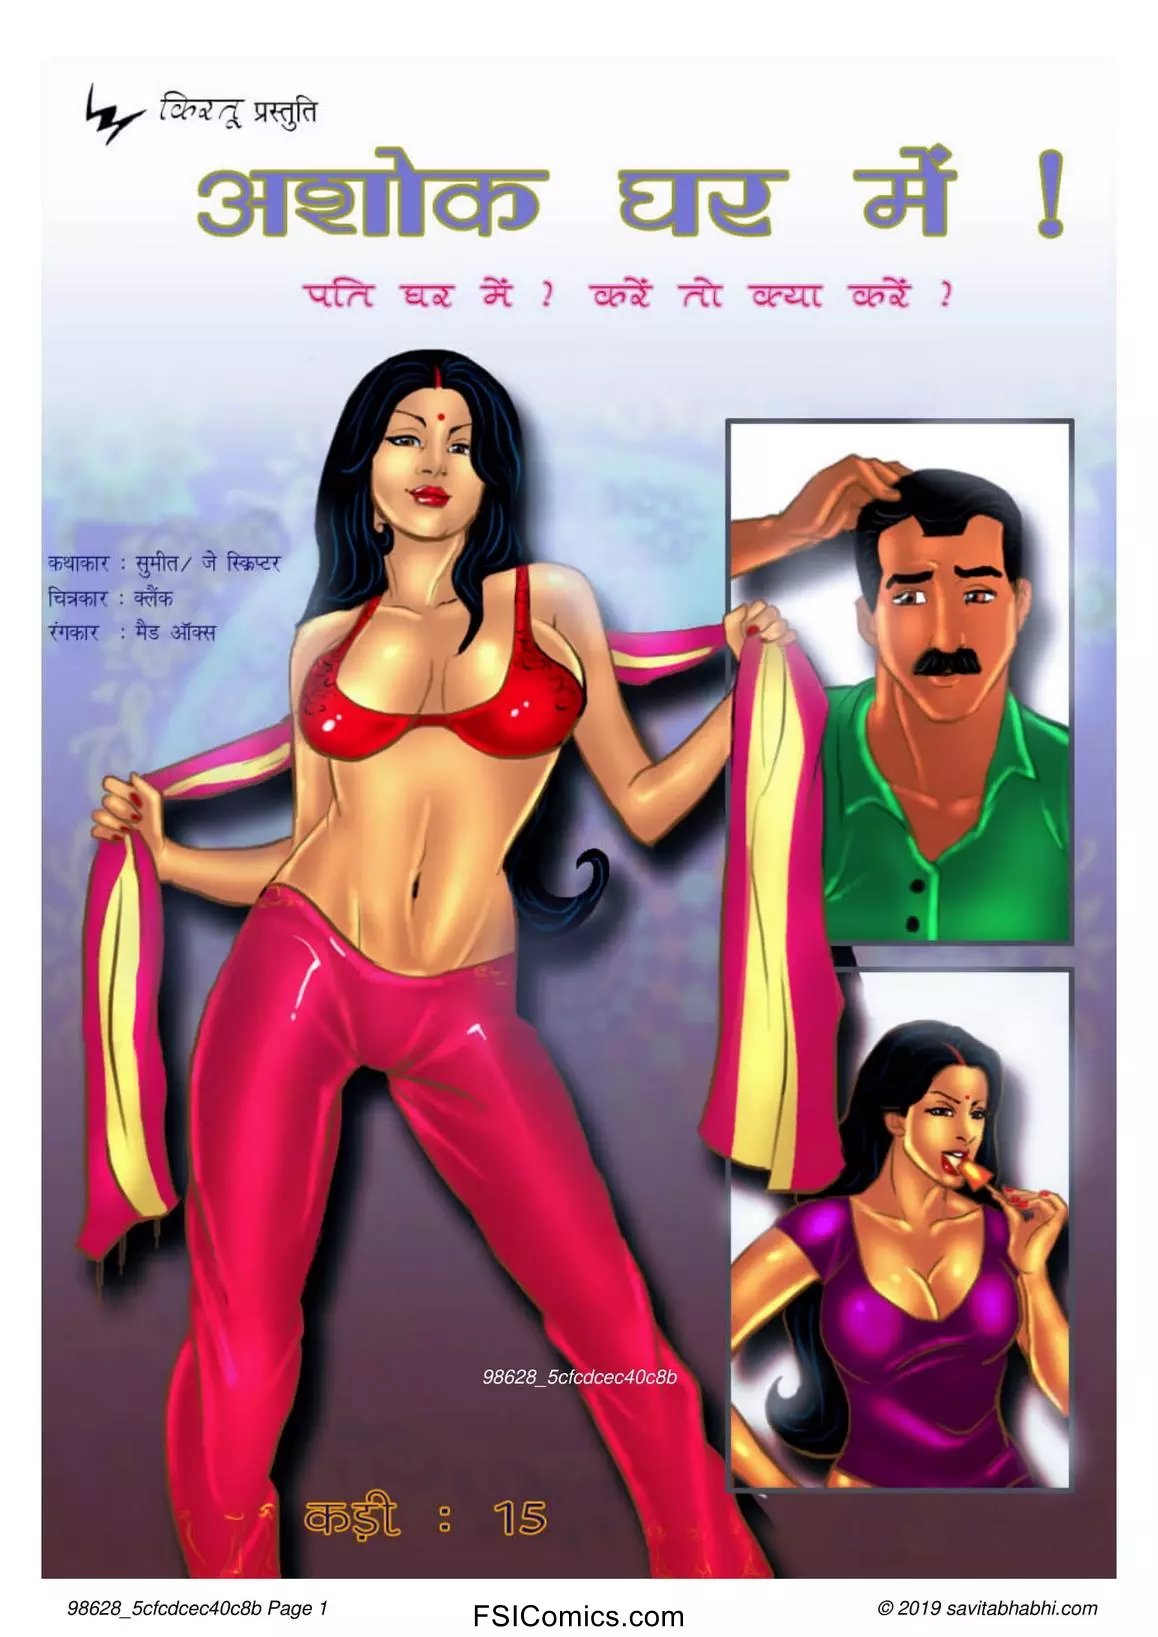 Savita Bhabhi Episode 15 Hindi – Ashok Ghar Main! (अशोक घर में !) - 49 - Fsicomics